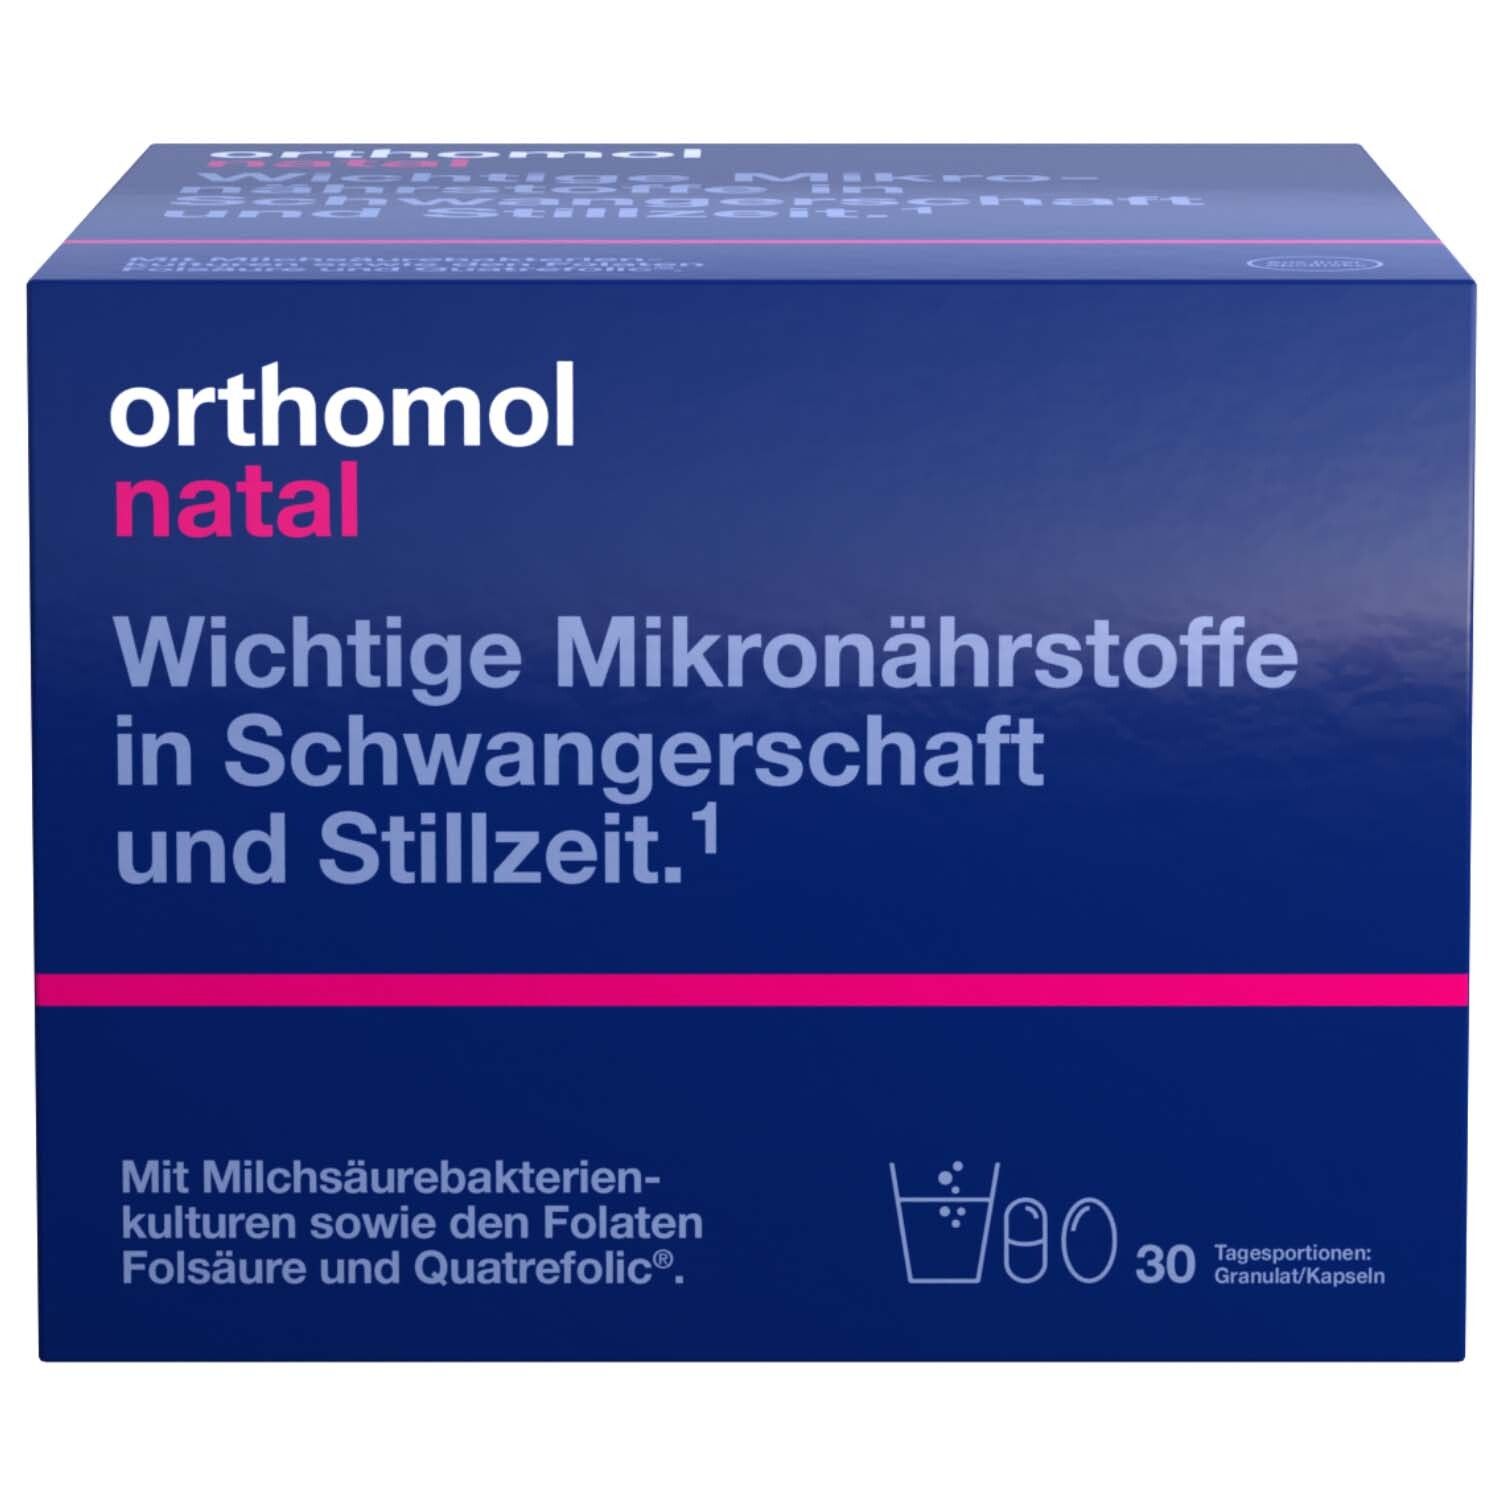 Orthomol Natal Granulat/Kapseln - Mikronährstoffe für Schwangerschaft und Stillzeit